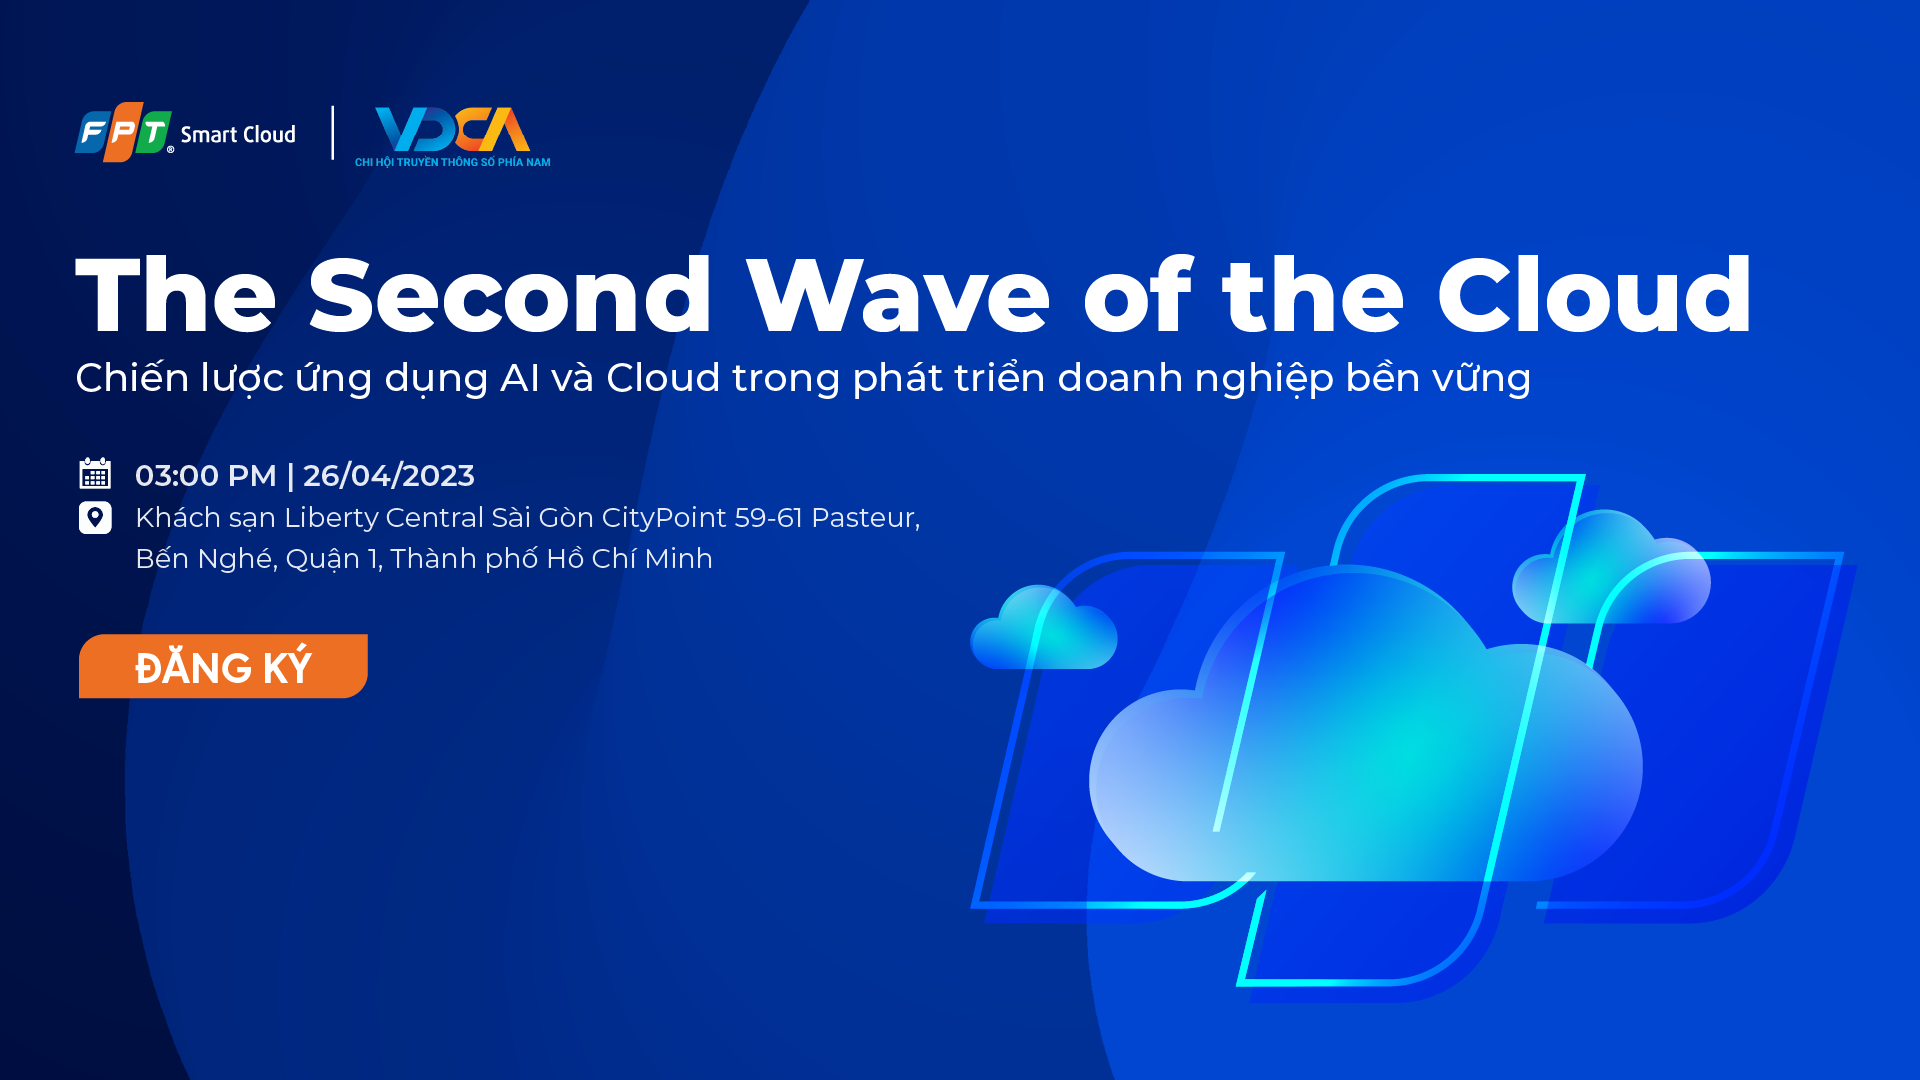 The Second wave of the Cloud: Chiến lược ứng dụng AI và Cloud trong phát triển doanh nghiệp bền vững